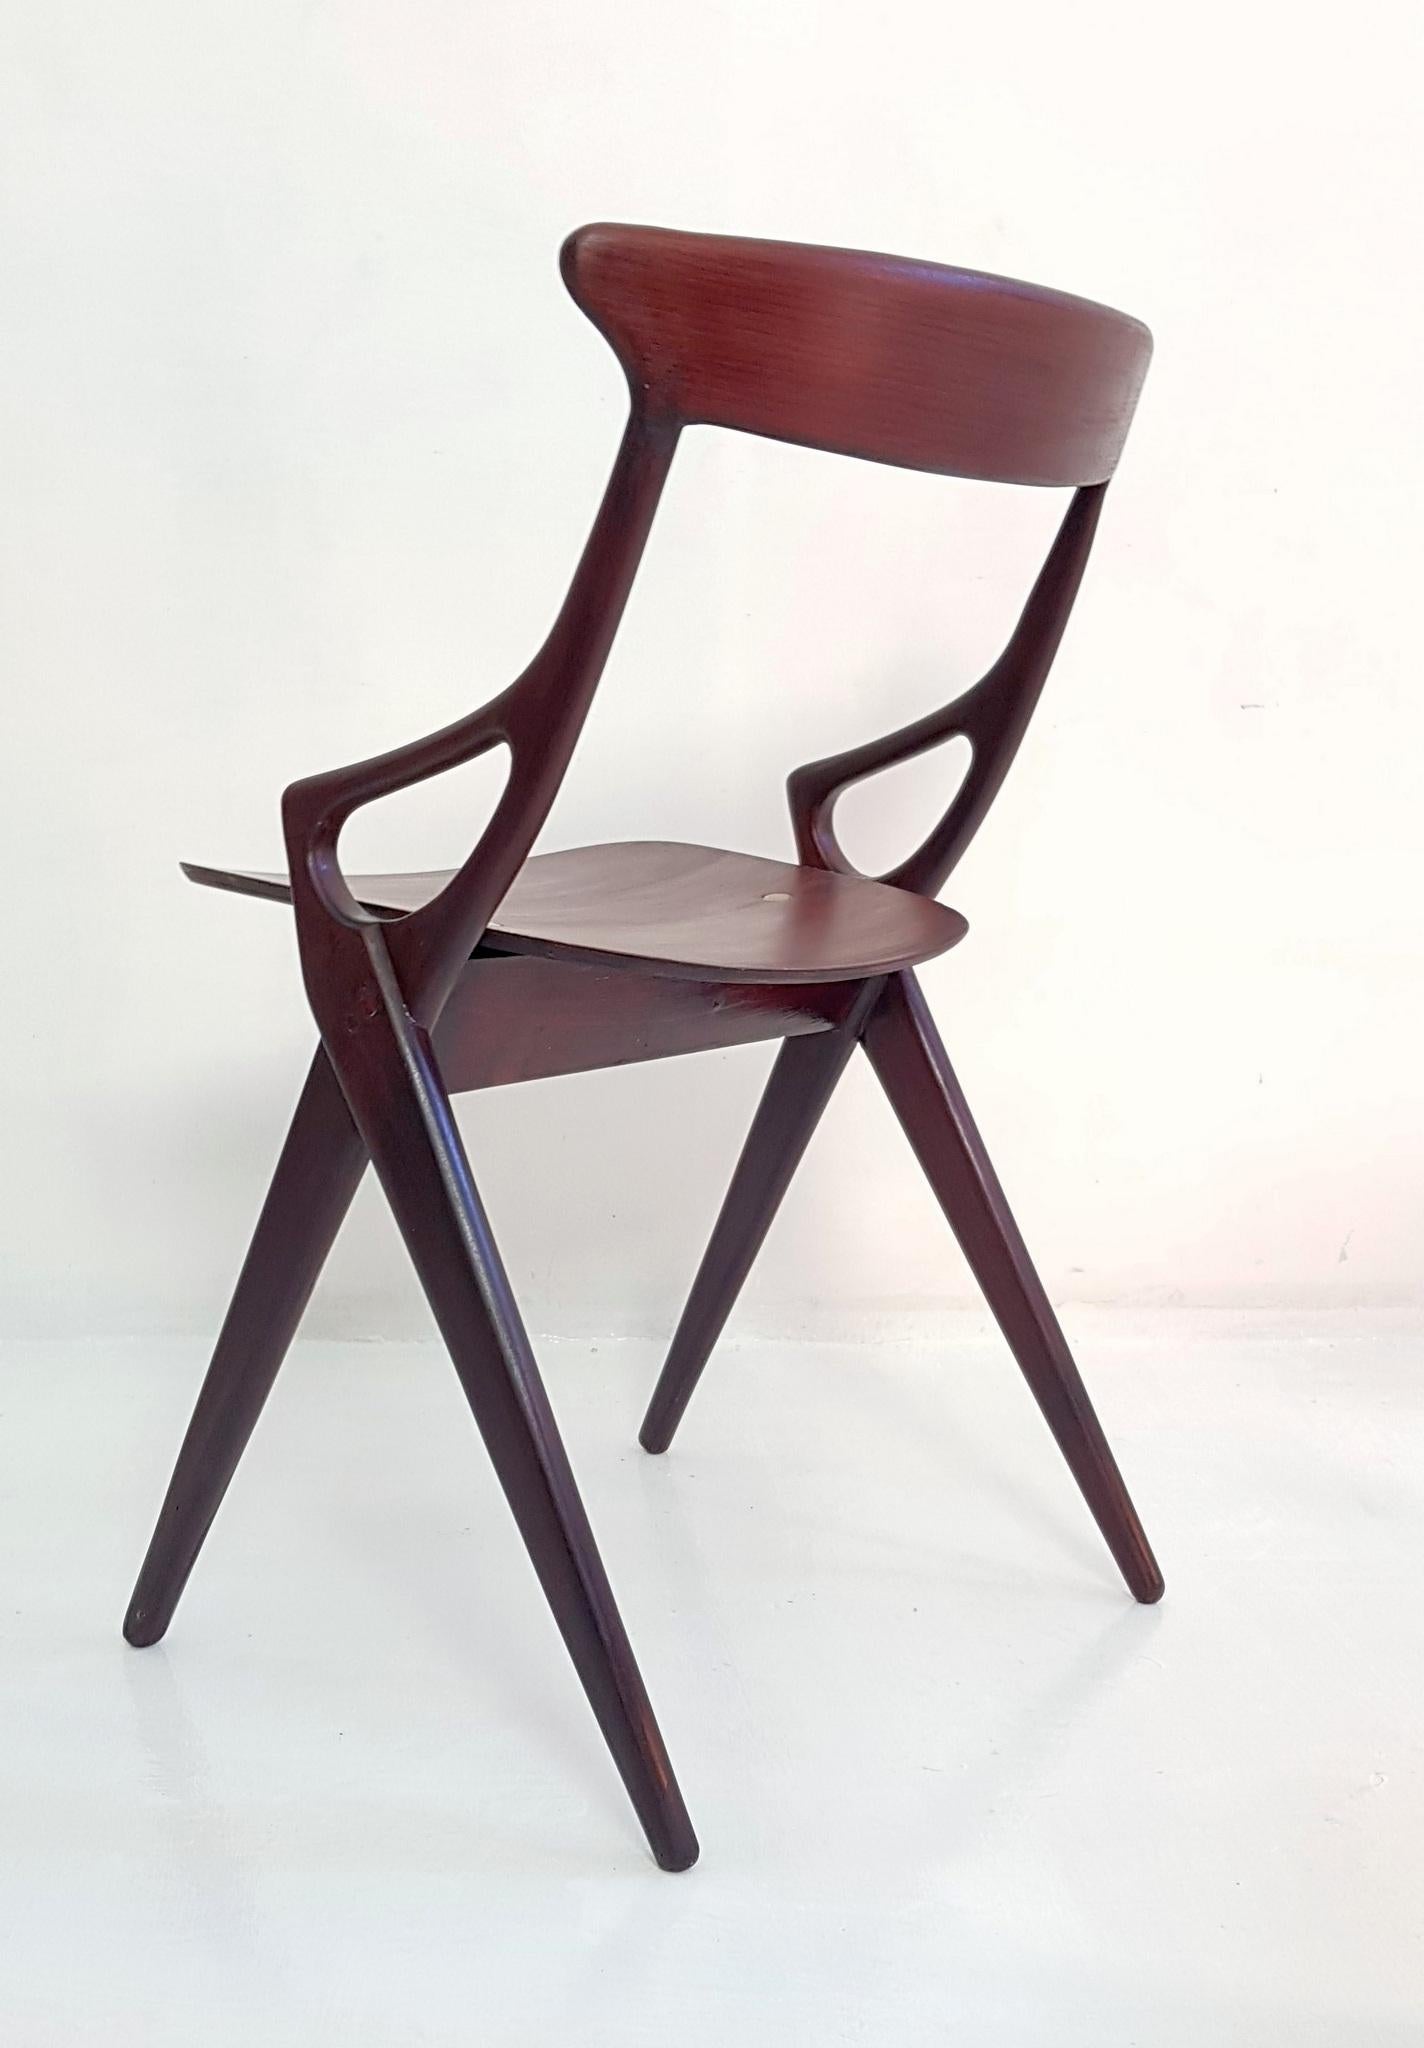 Teak Set of 4 Dining Chairs by Arne Hovmand Olsen for Mogens Kold Denmark 1959